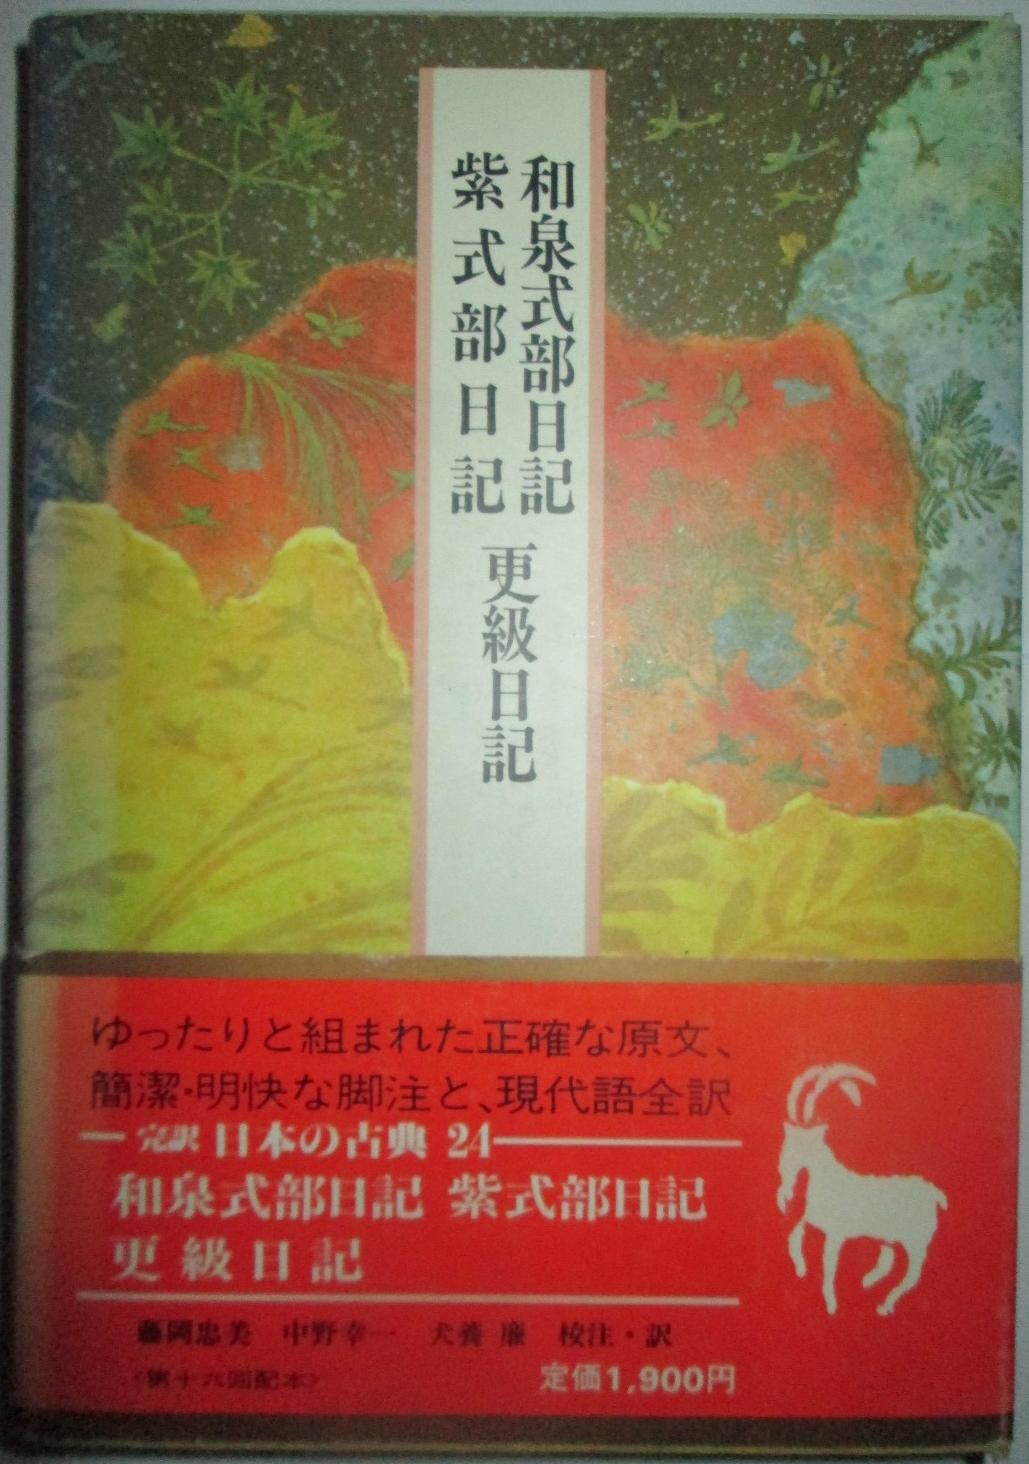 Izumi Shikibu nikki (Kan'yaku Nihon no koten) (Japanese Edition) - Izumi Shikibu